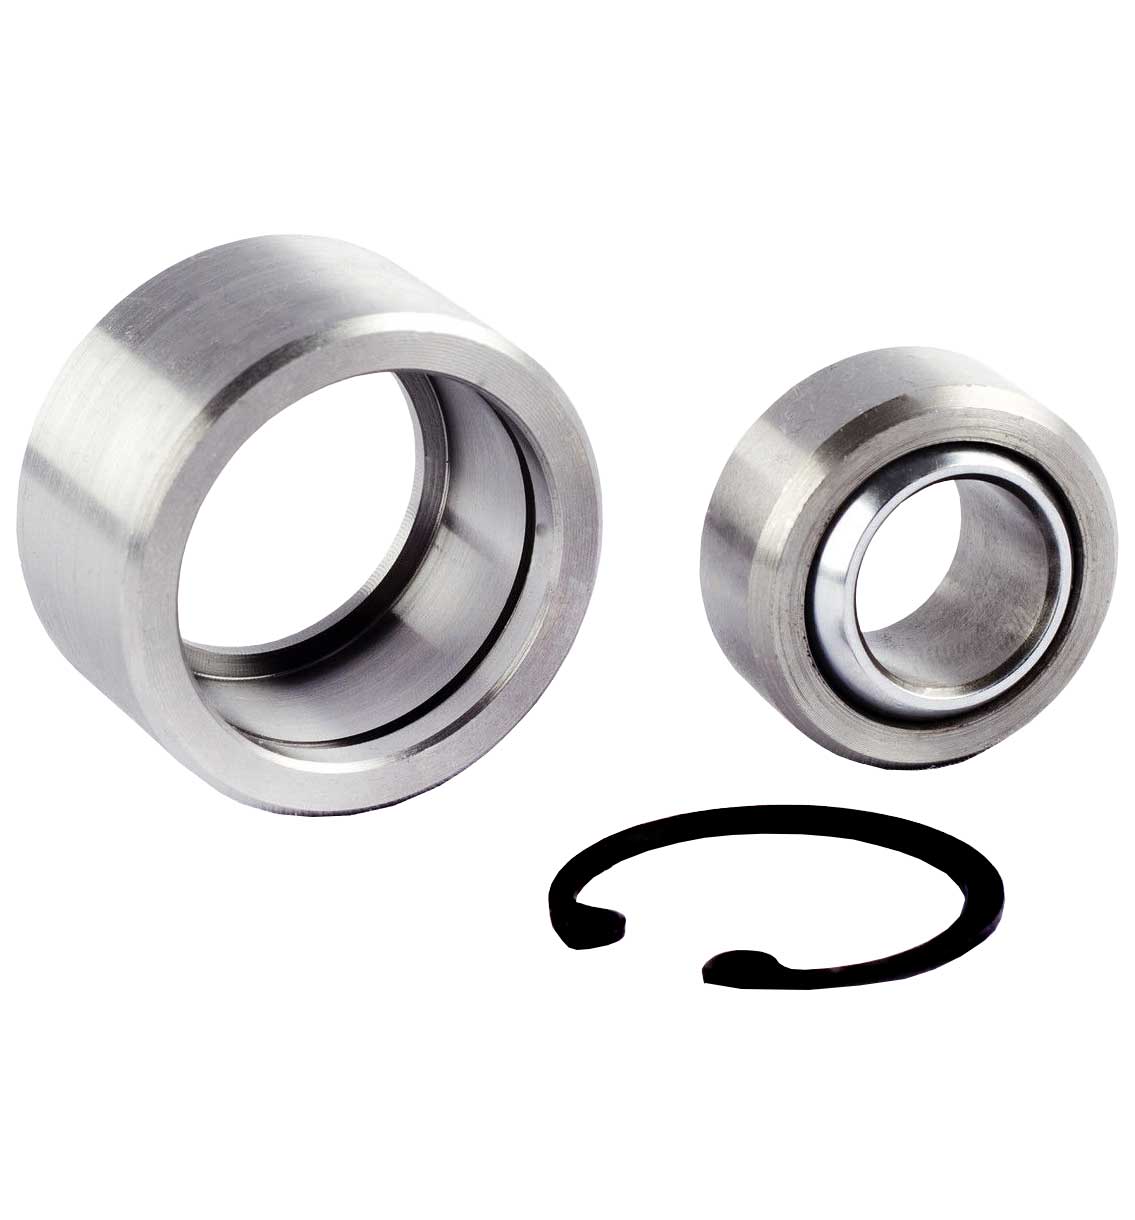 bearings